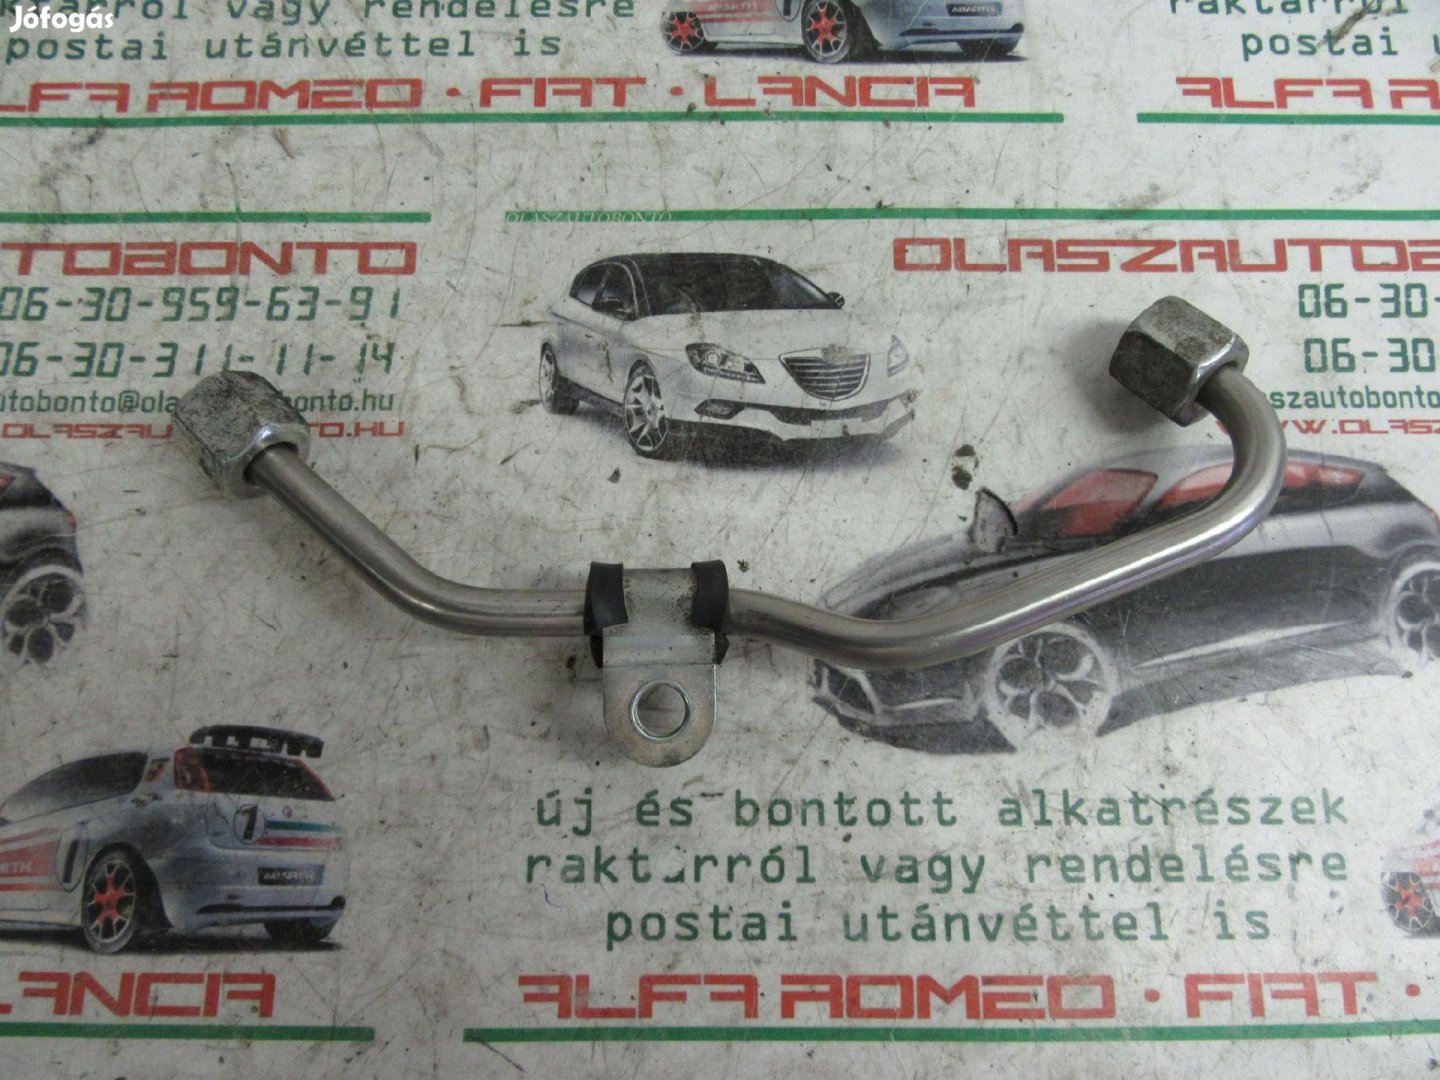 Alfa Romeo/Lancia 1750 TB, 55217404 számú üzemanyag cső